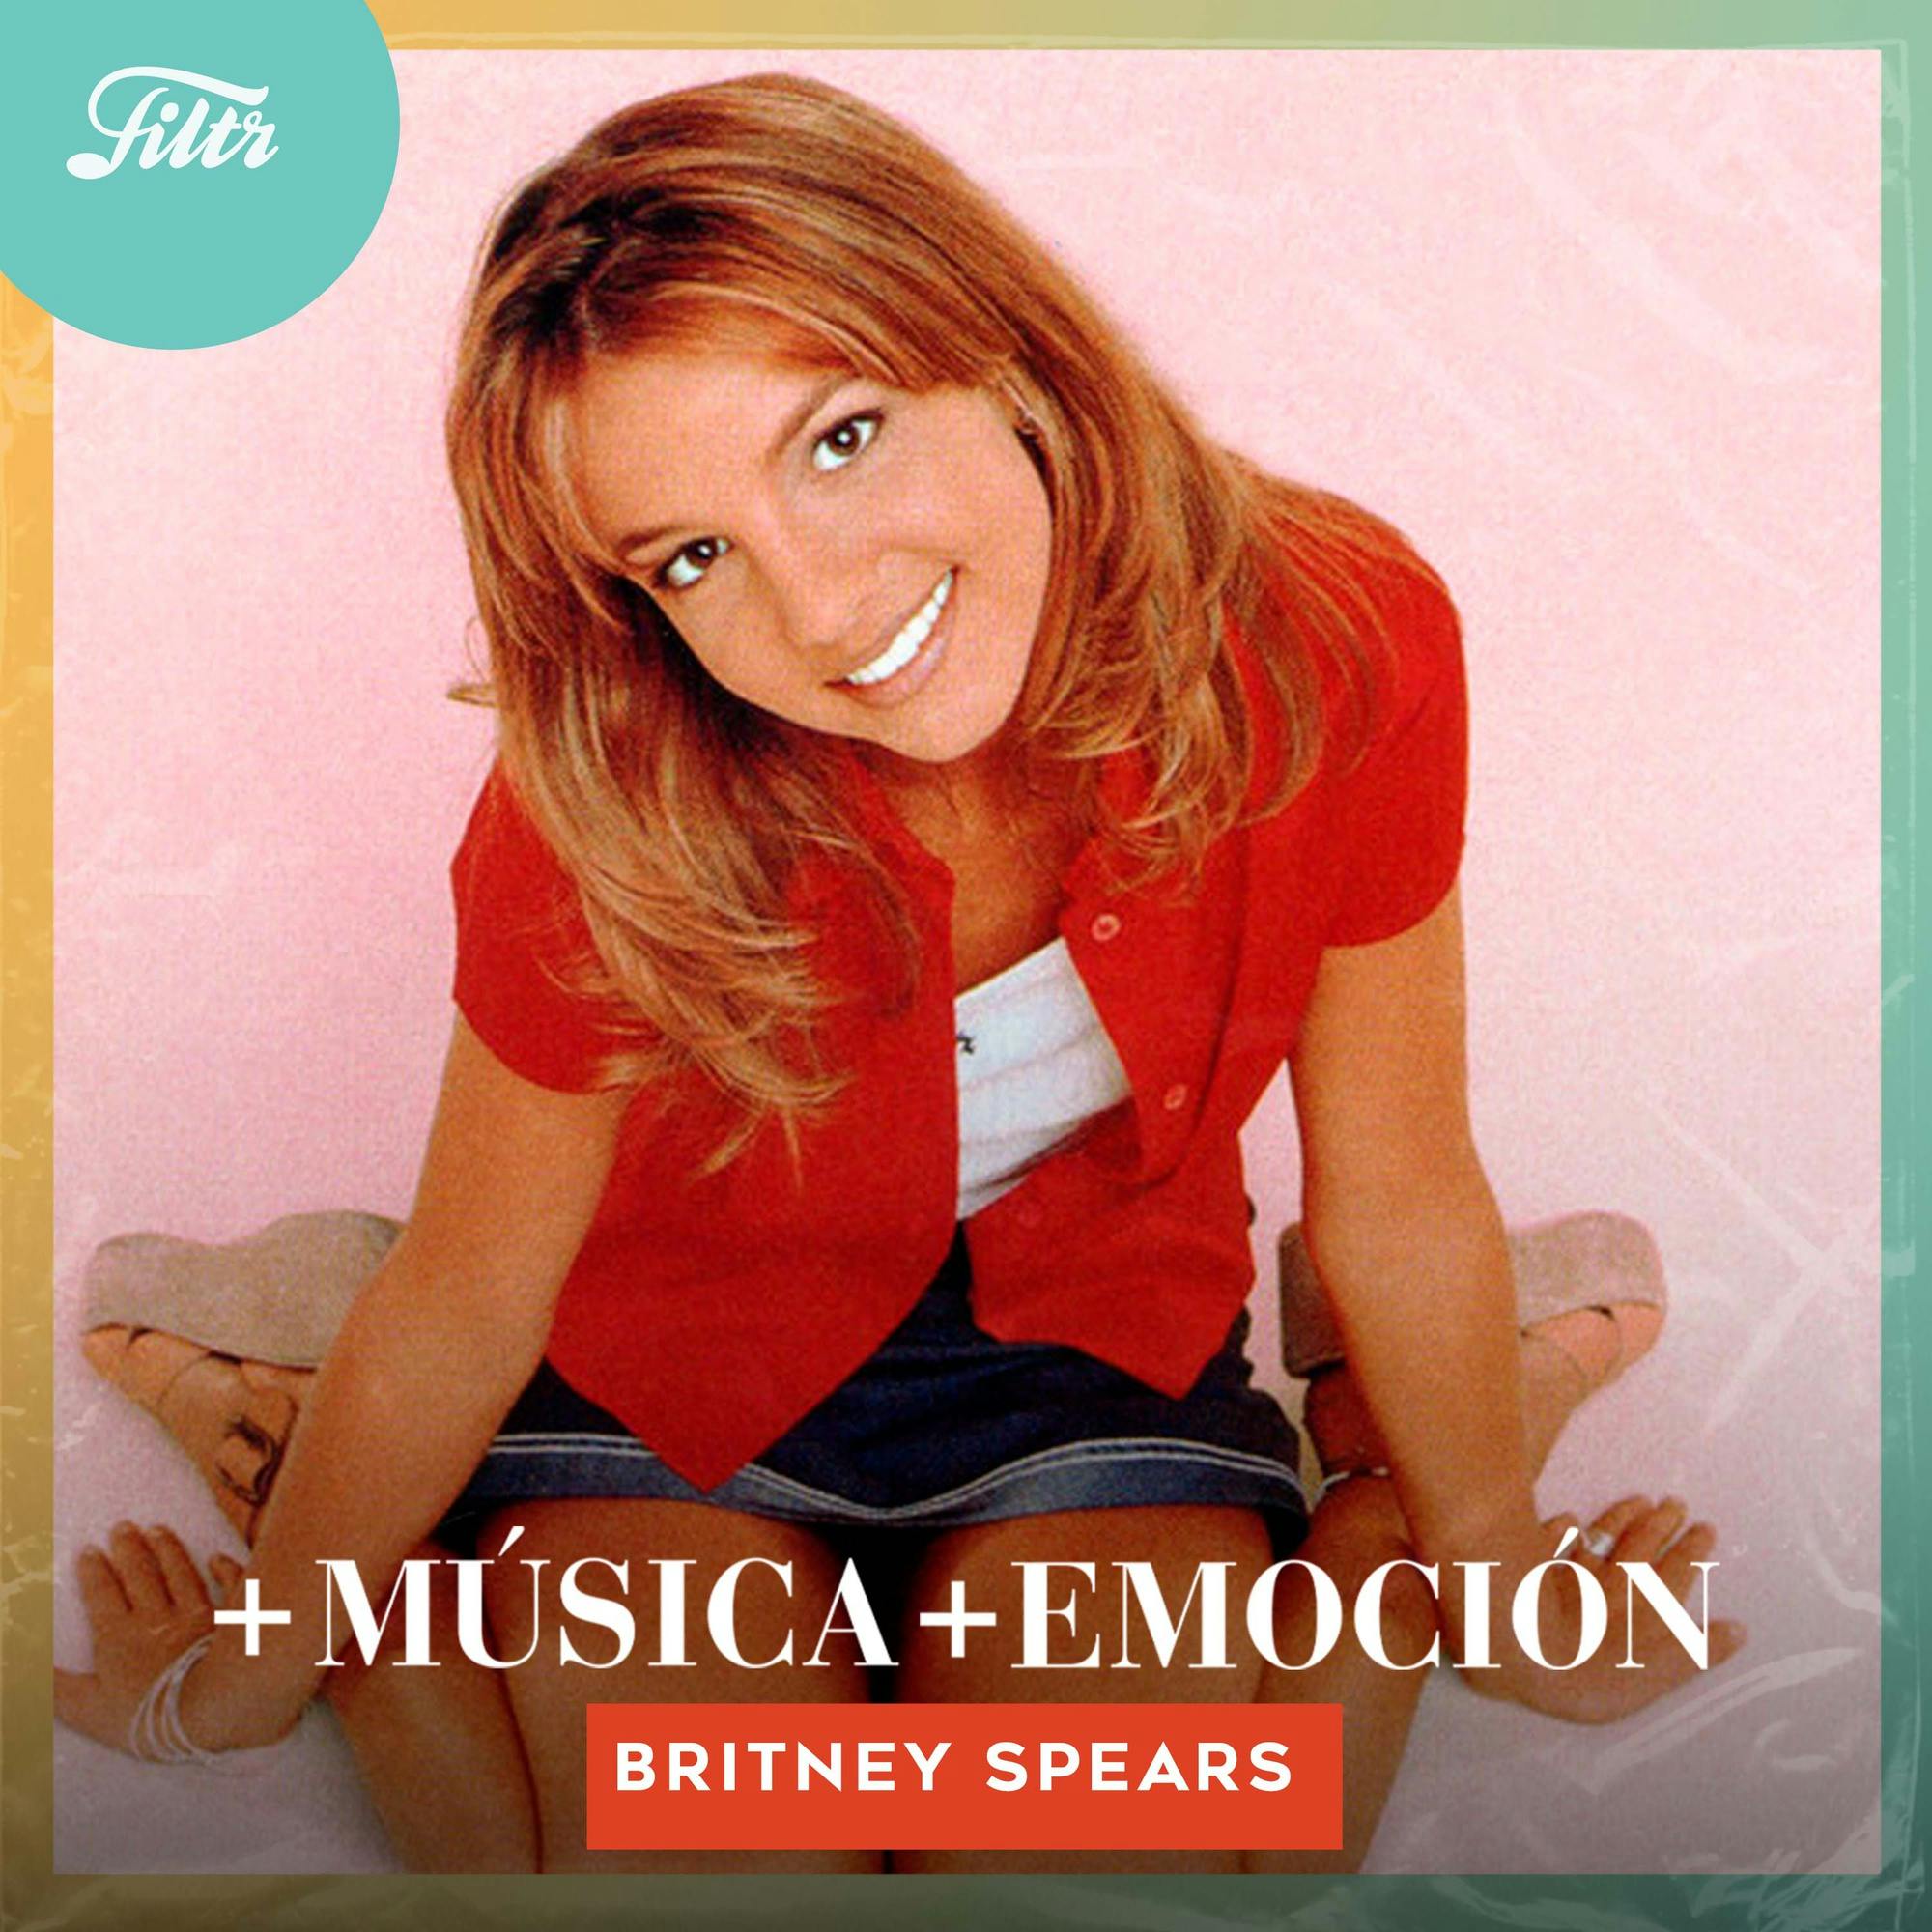 Britney Spears: La Explosión del Pop. Temporada 2 - Episodio #13